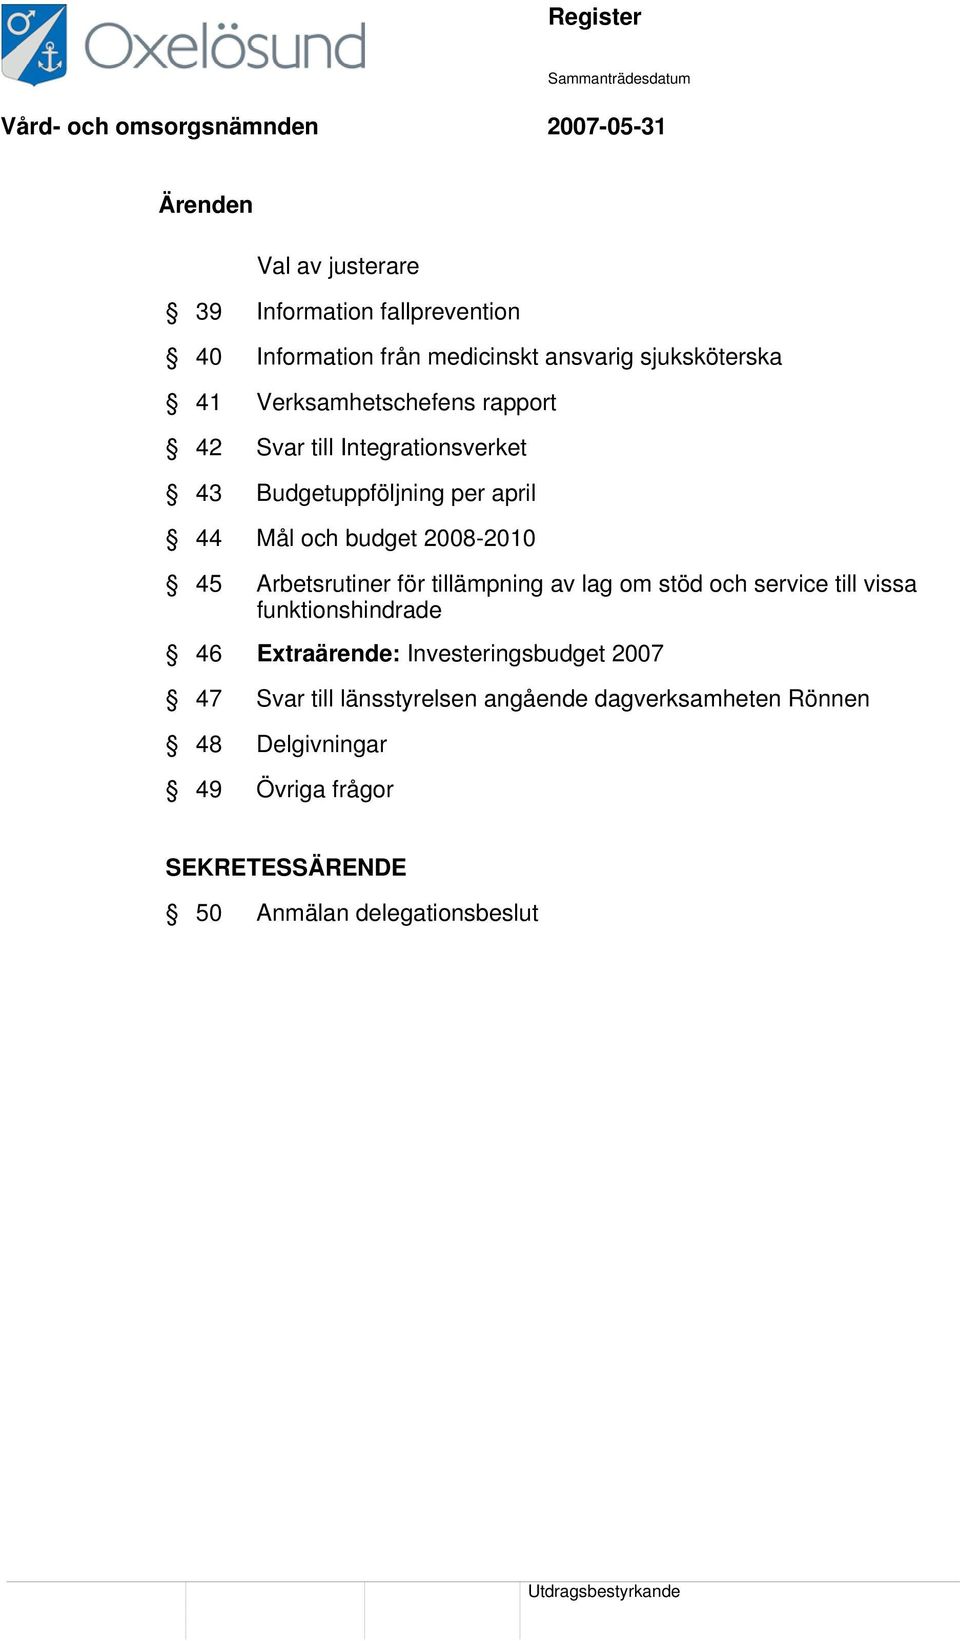 Arbetsrutiner för tillämpning av lag om stöd och service till vissa funktionshindrade 46 Extraärende: Investeringsbudget 2007